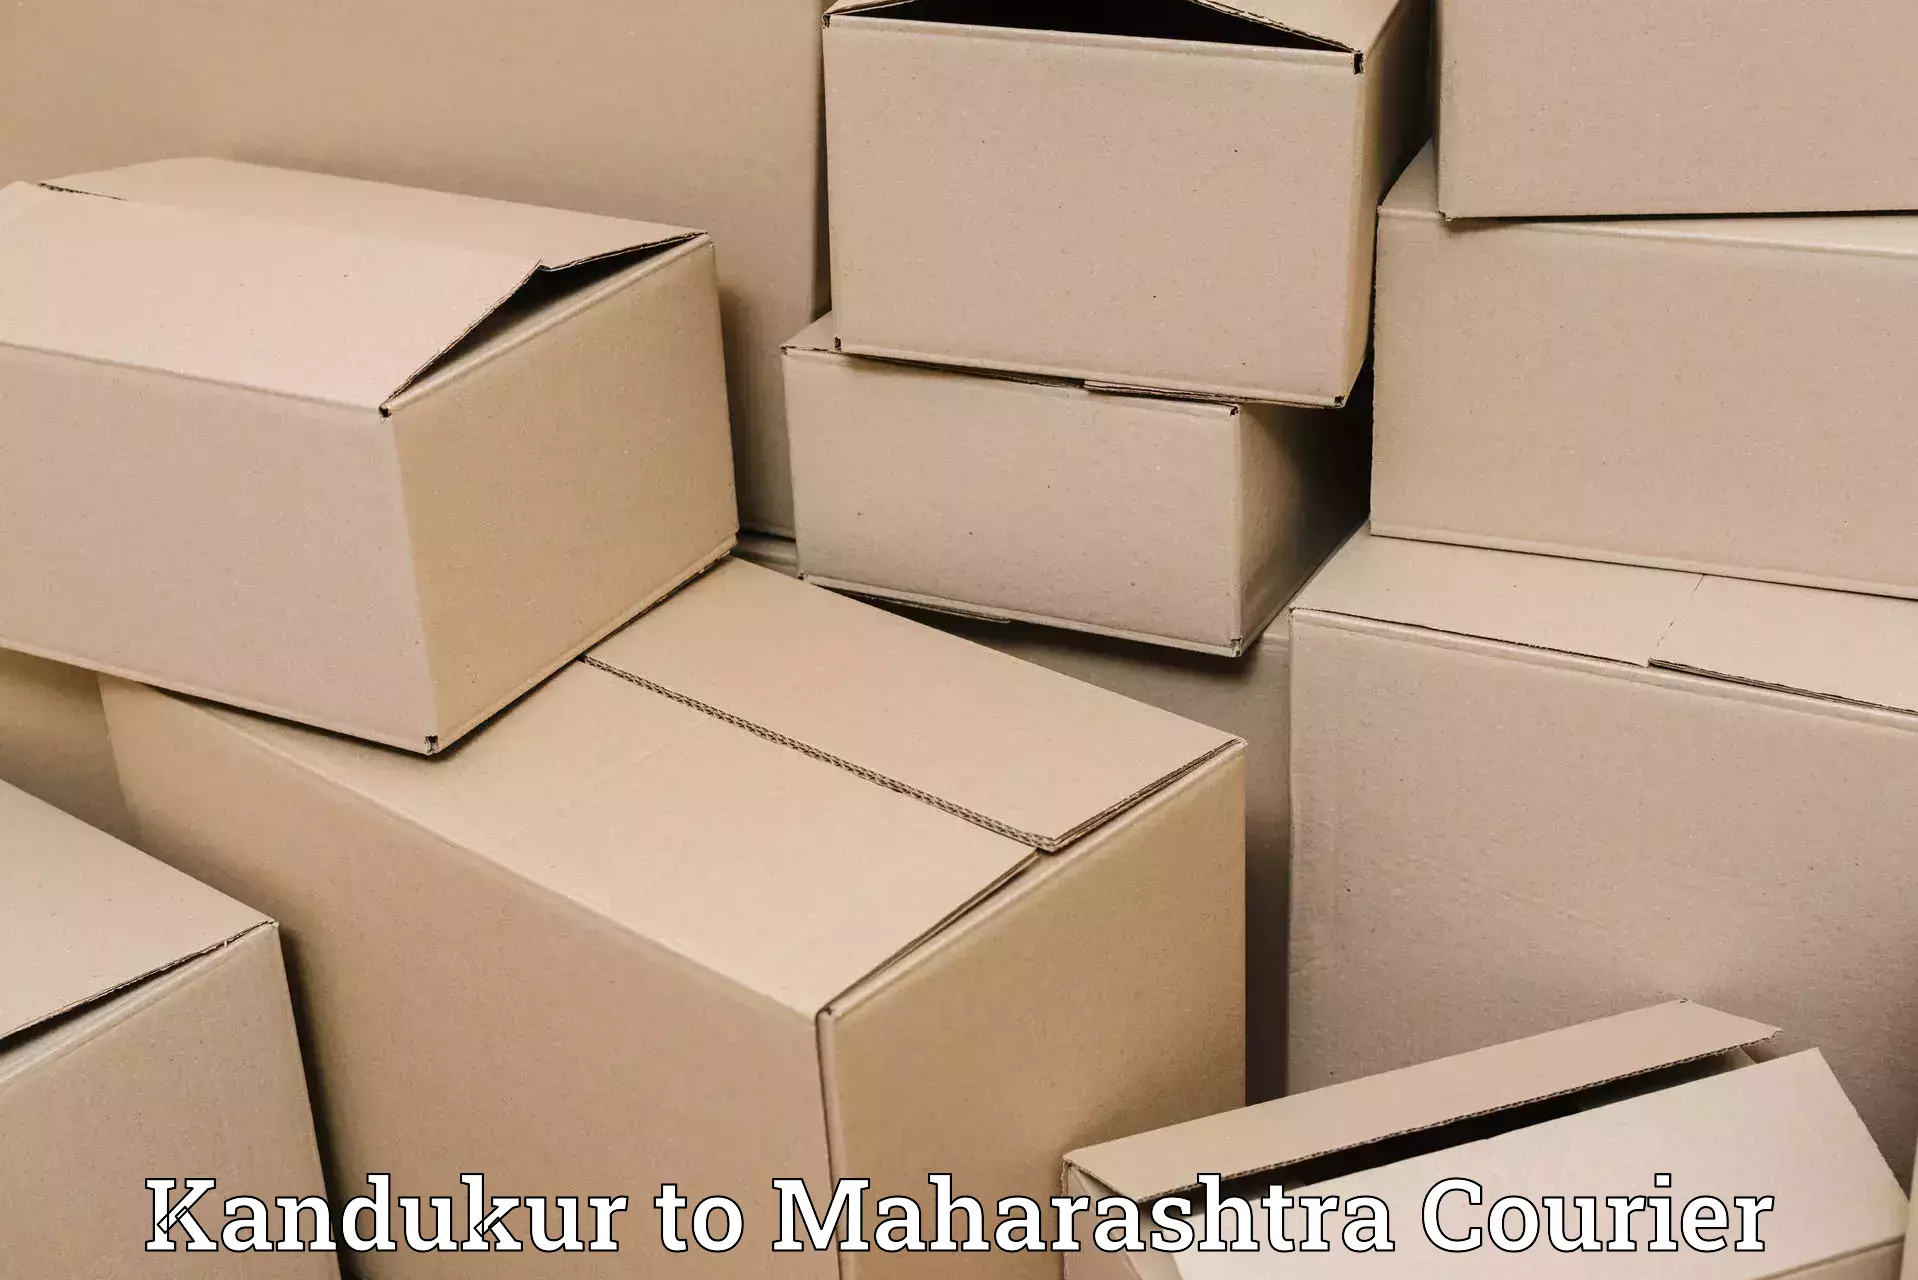 Reliable logistics providers Kandukur to Mumbai Port